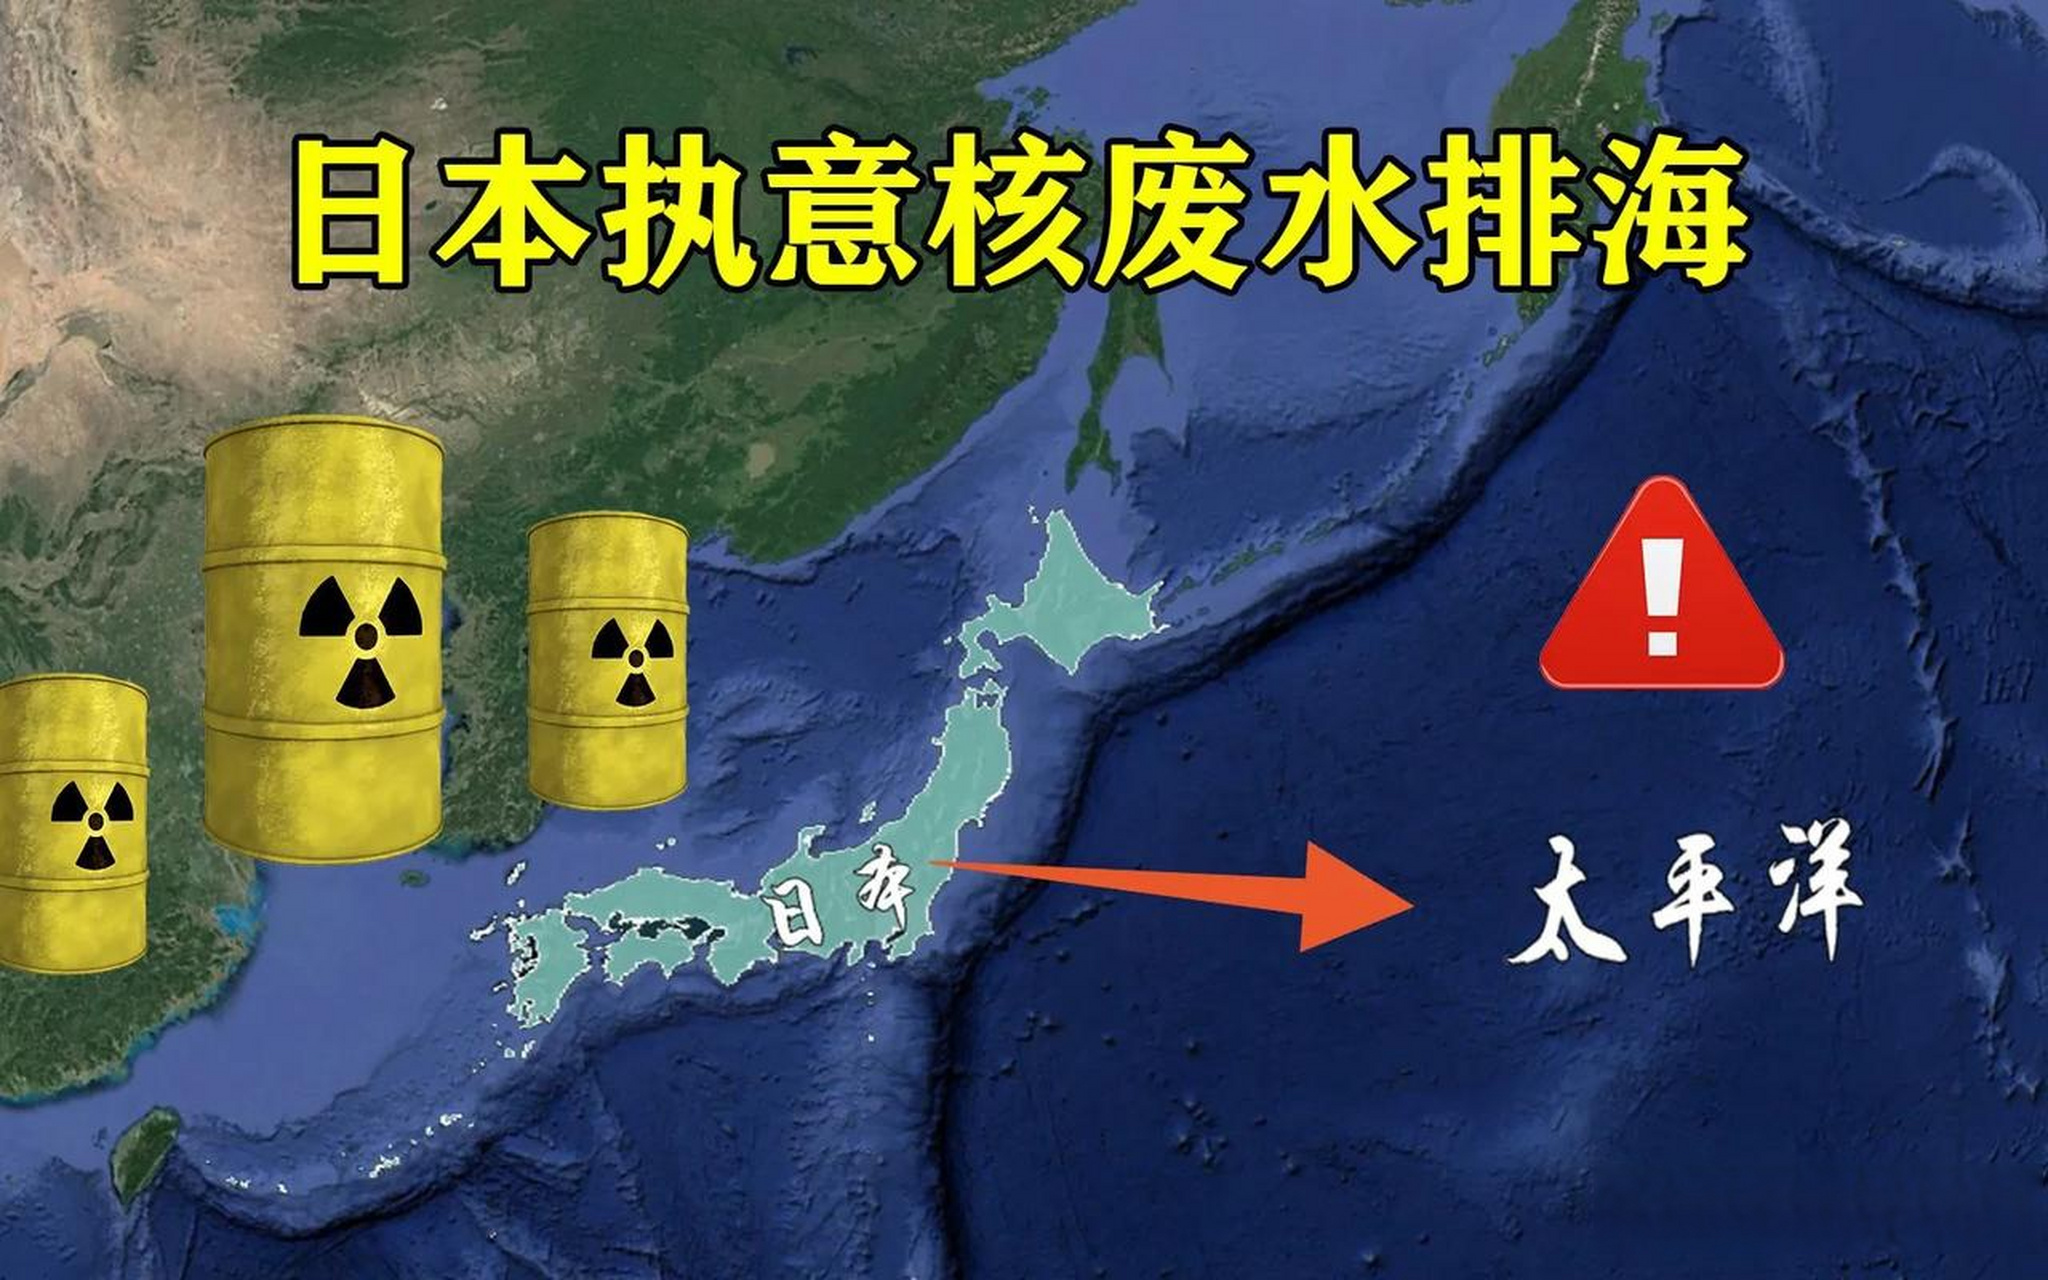 日本130吨核废水排放倒计时,57天污染半个太平洋,预计排放30年,按照